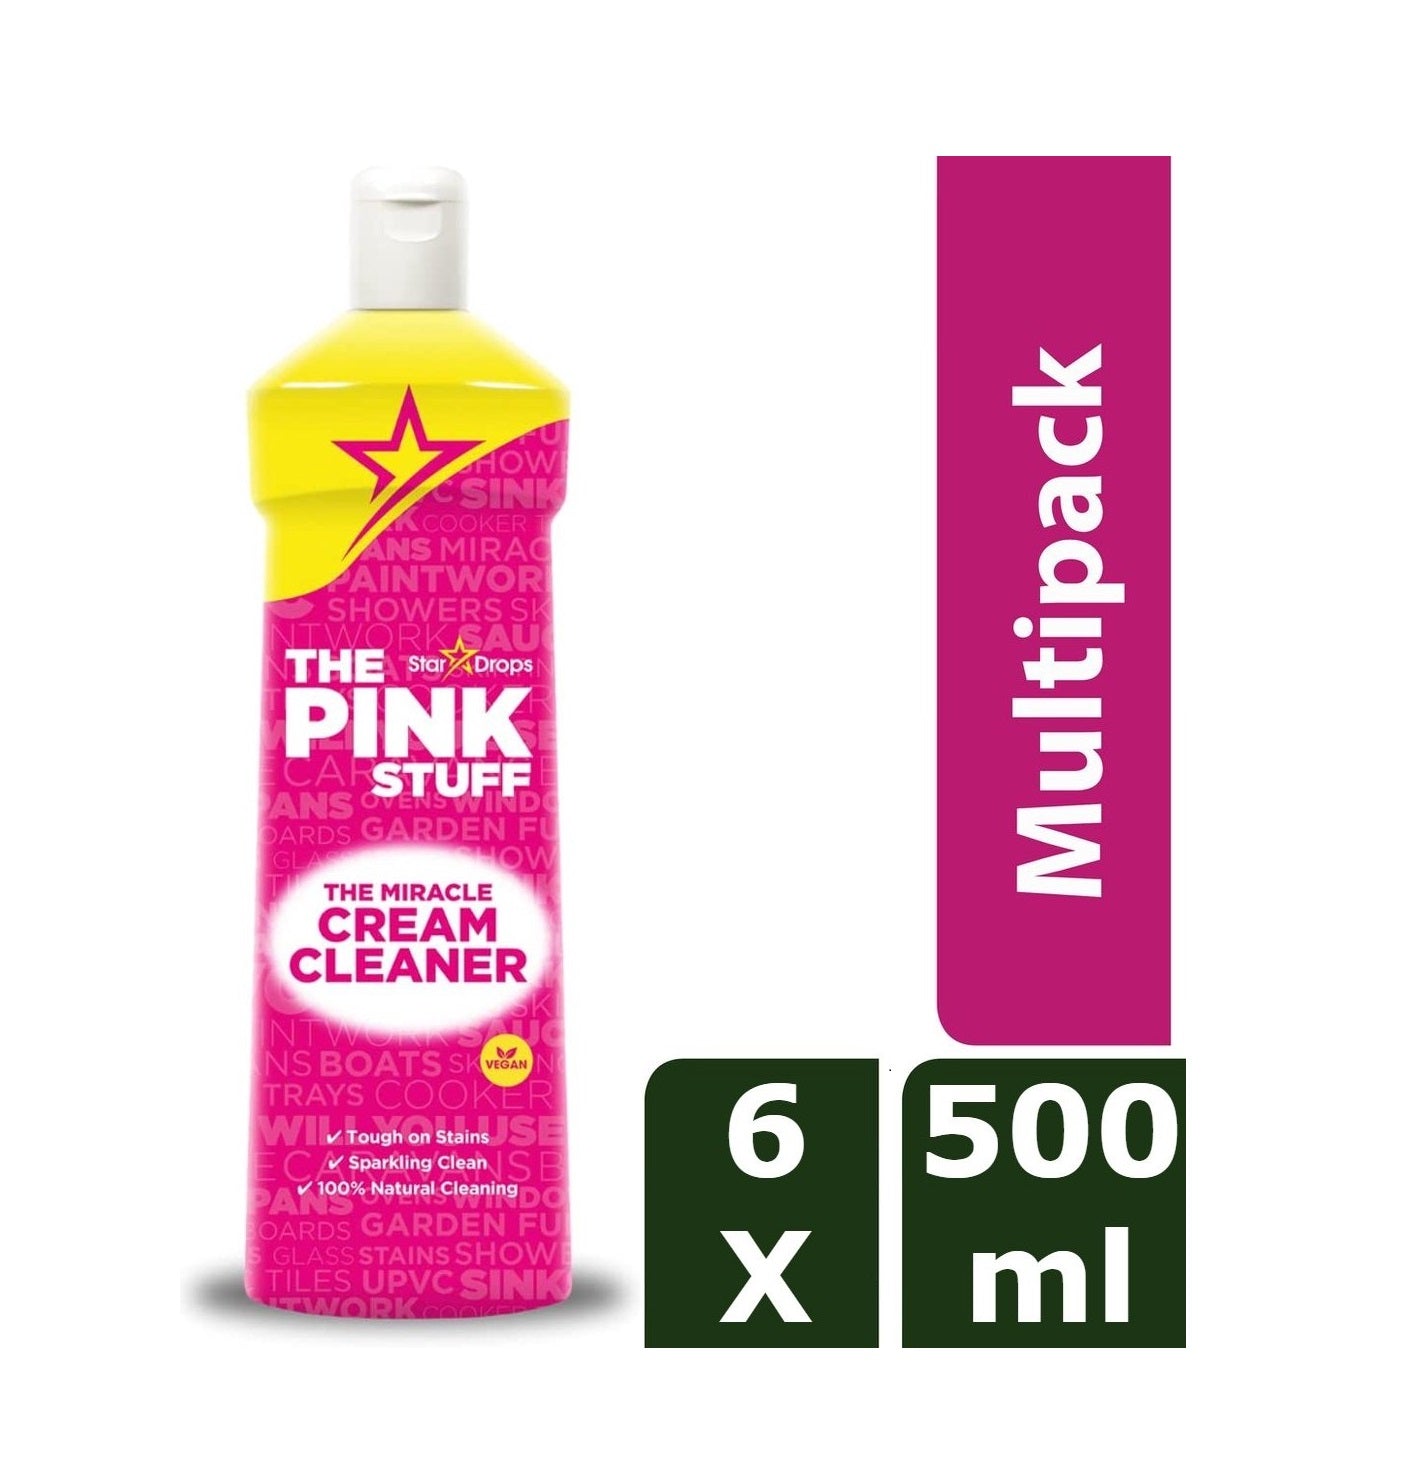 The Pink Stuff Crema abrasiva - Confezione economica da 6 x 500 ml - Rispettosa dell'ambiente